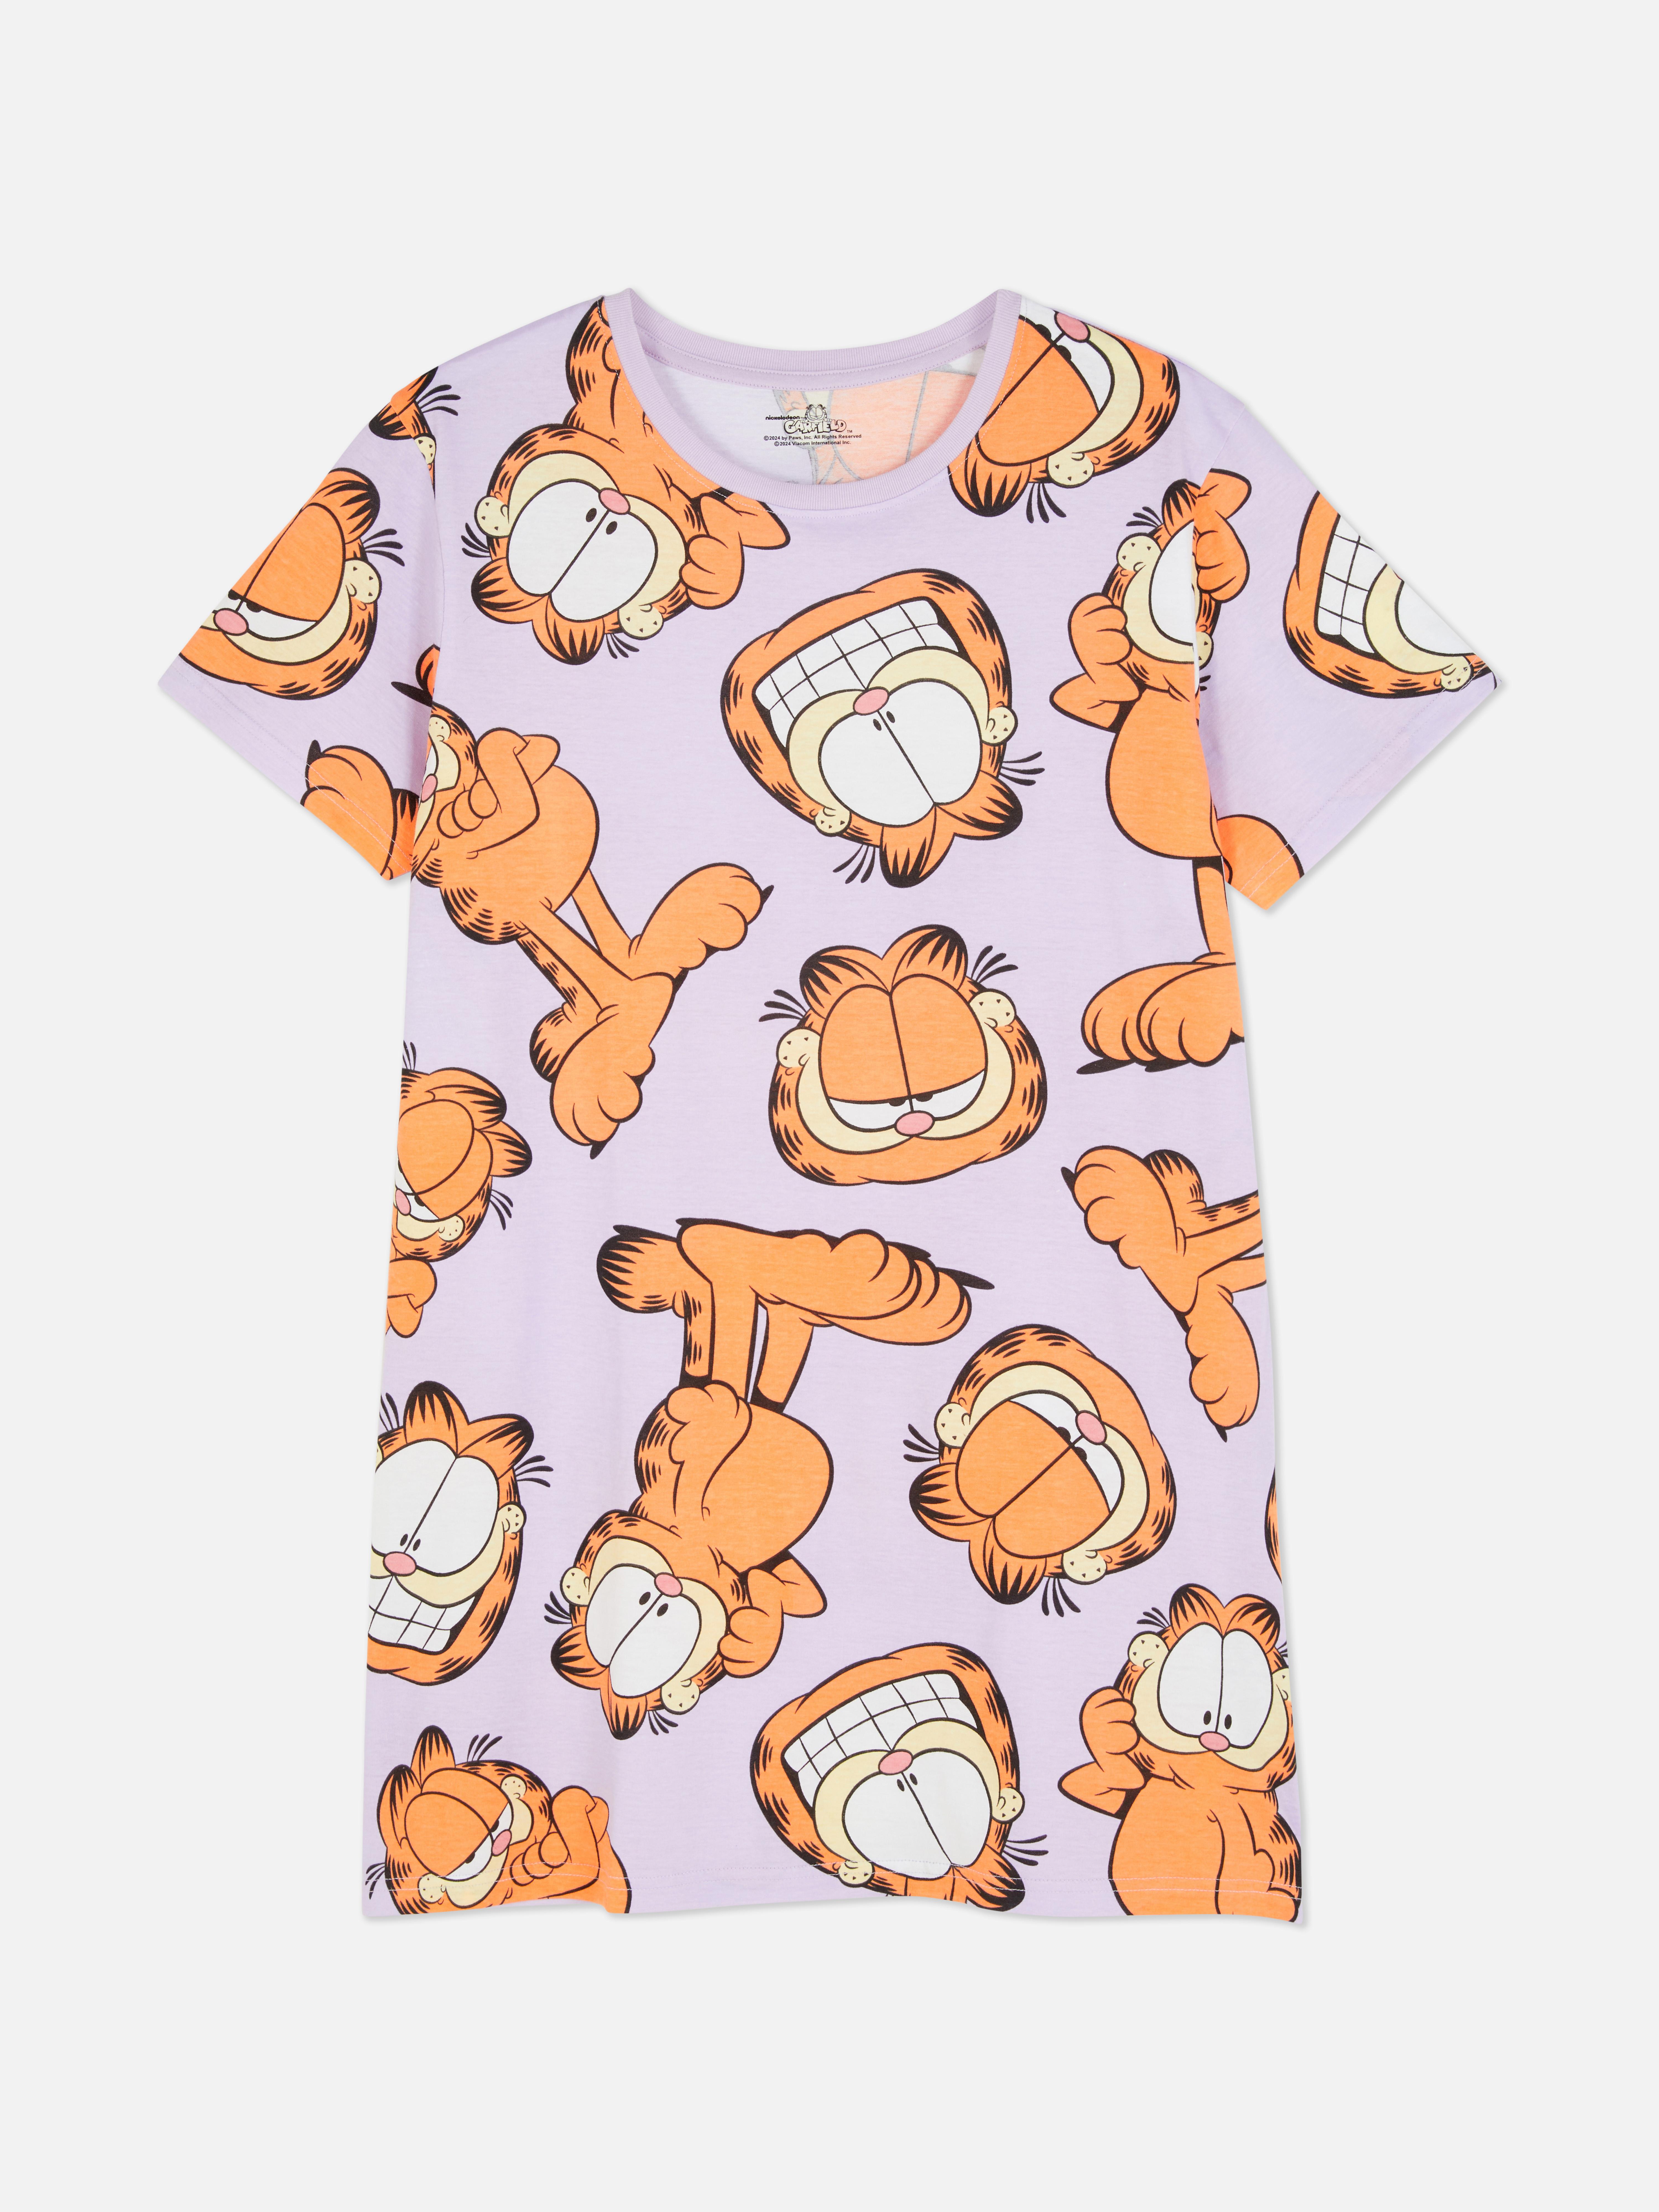 Garfield Sleep Tee